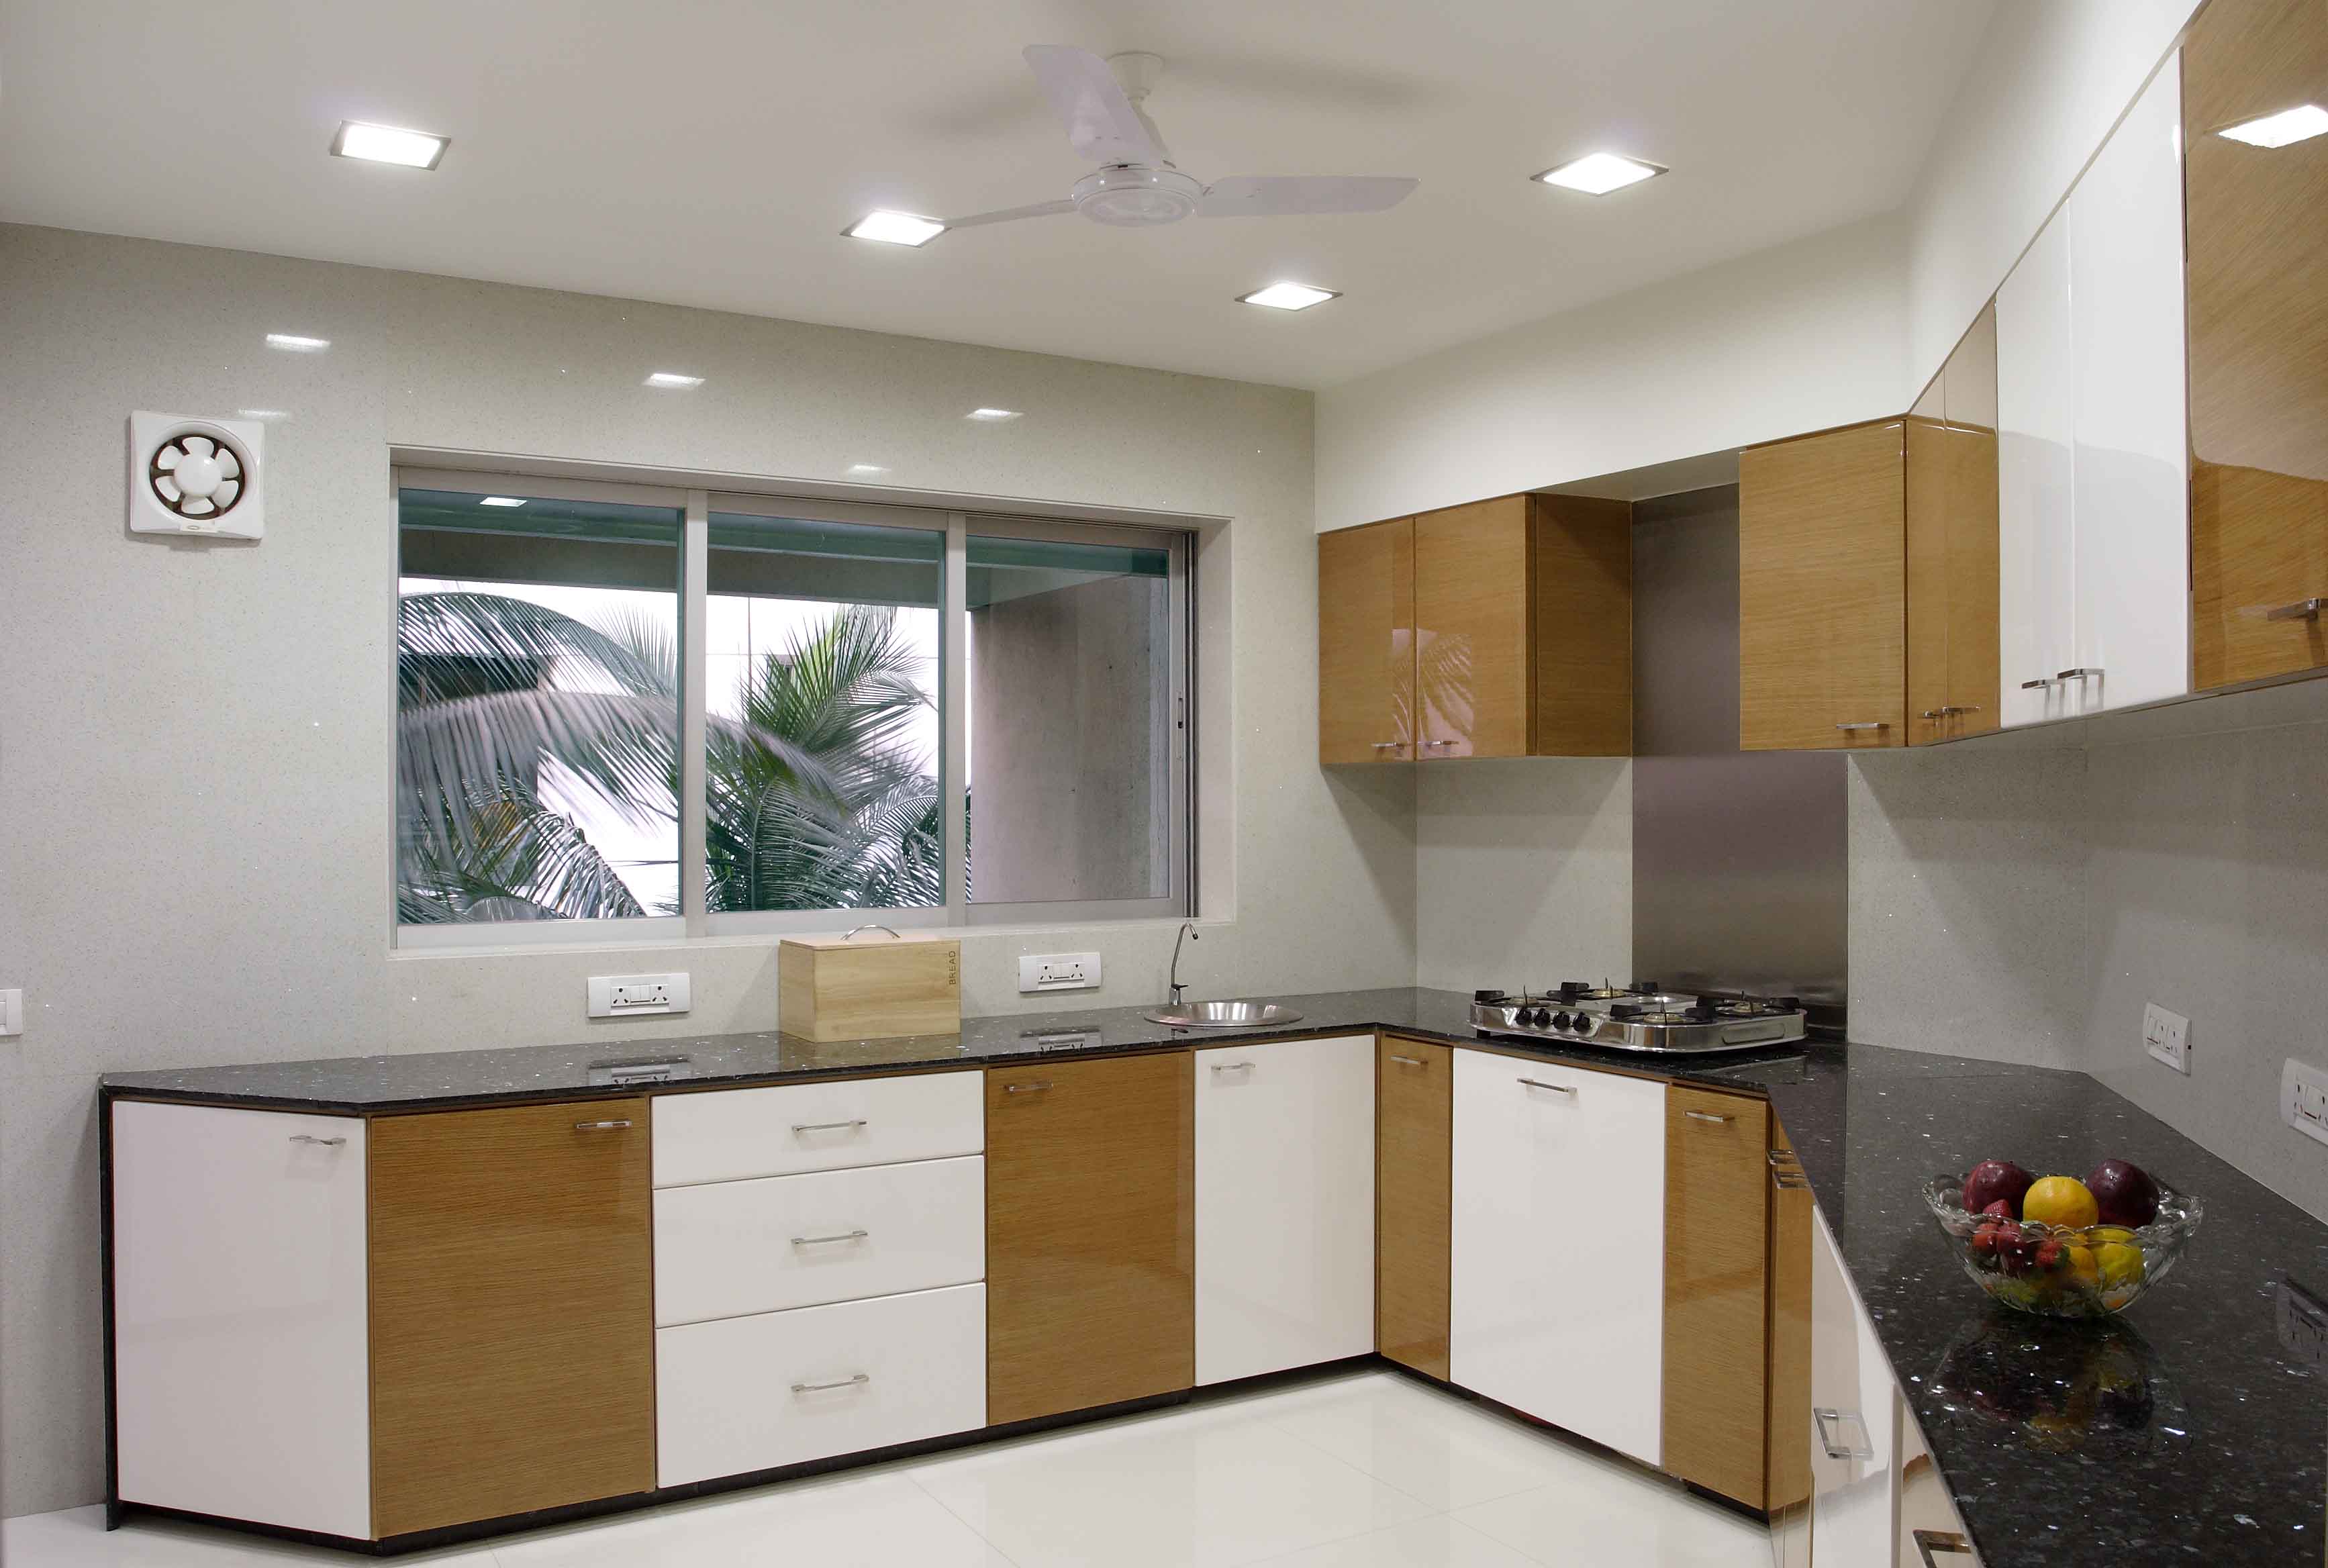 interior-kitchen-design-design-ideas-6-on-kitchen-design-ideas (1).